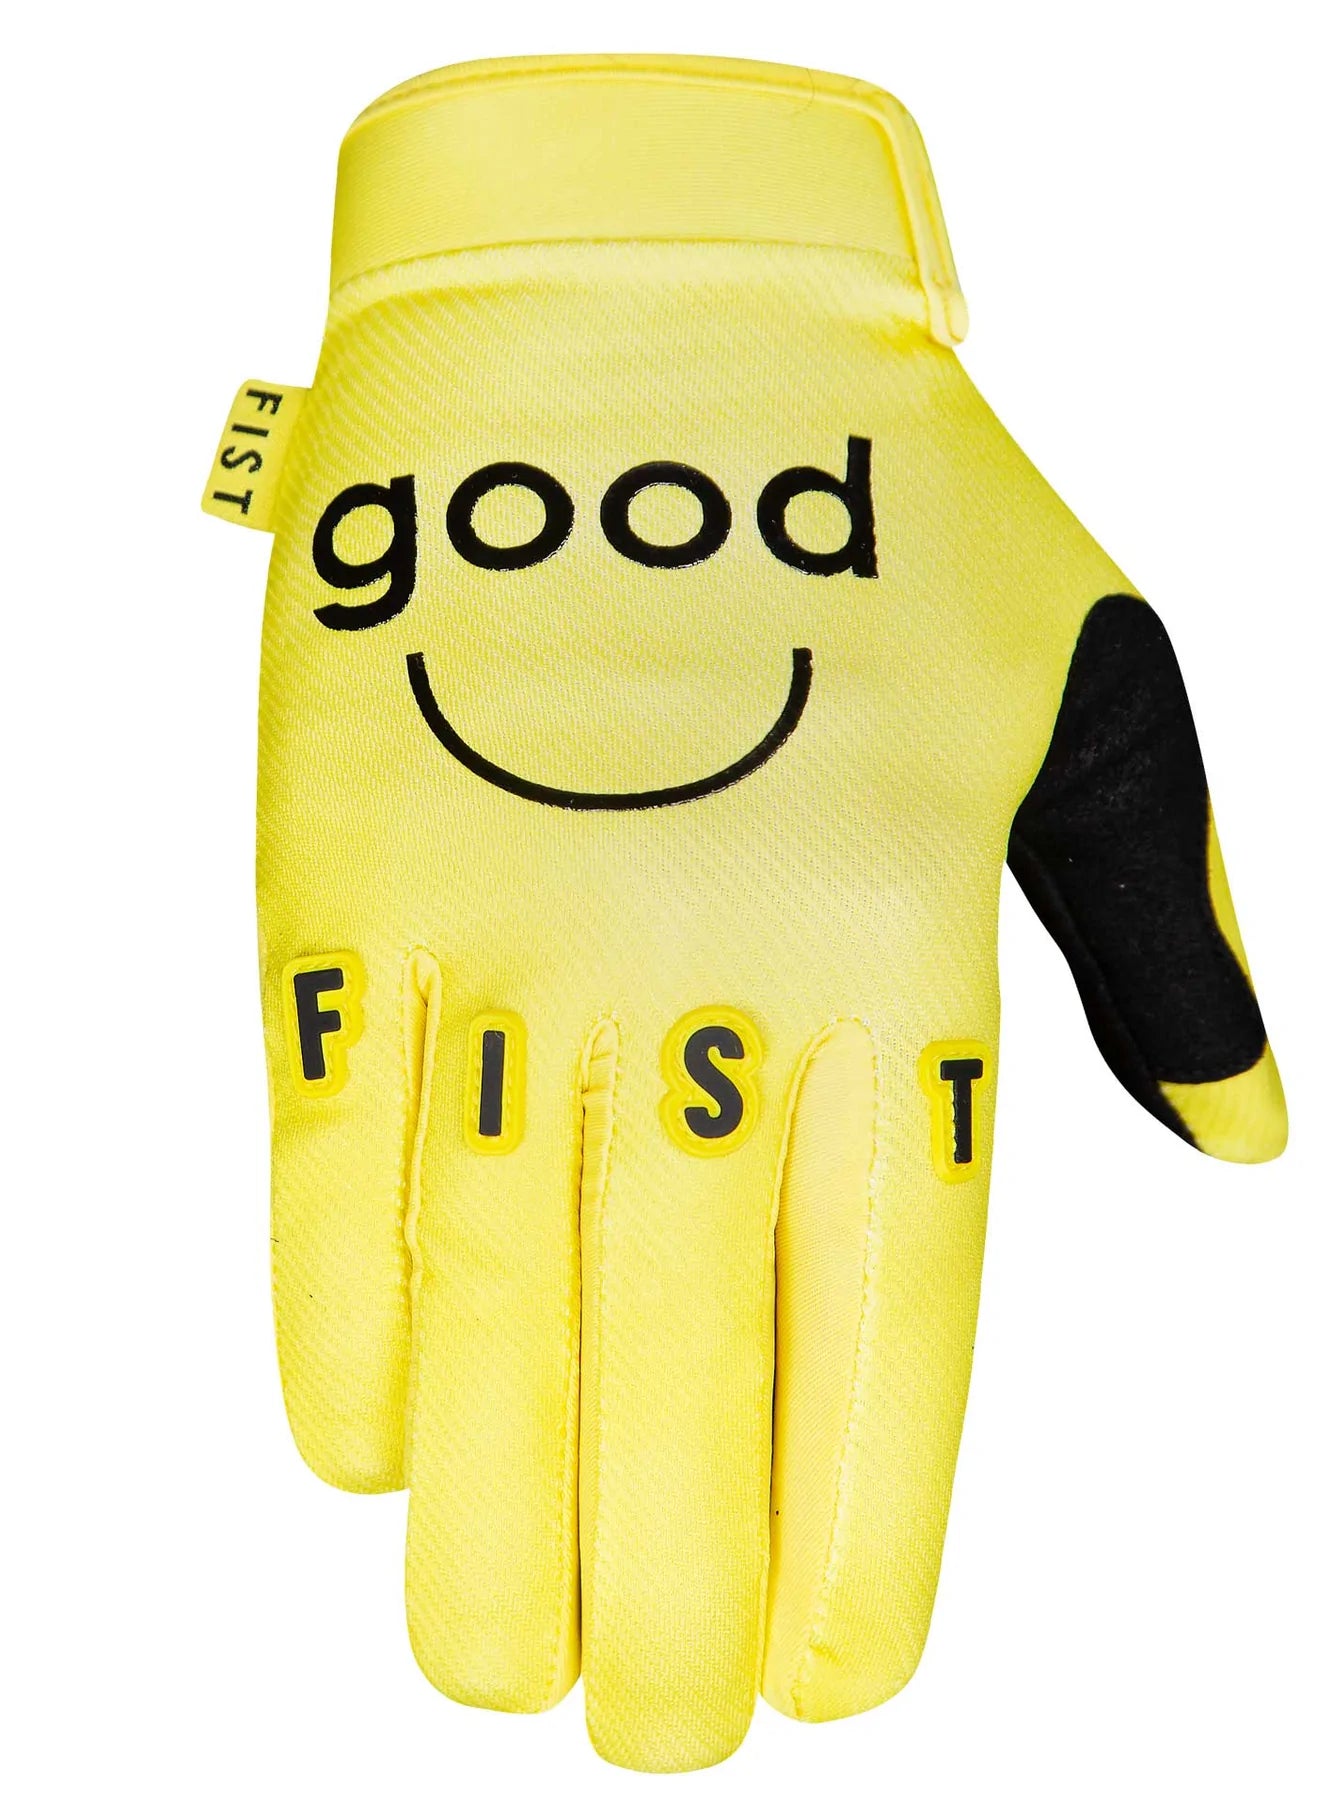 Fist Good Human Factory Glove